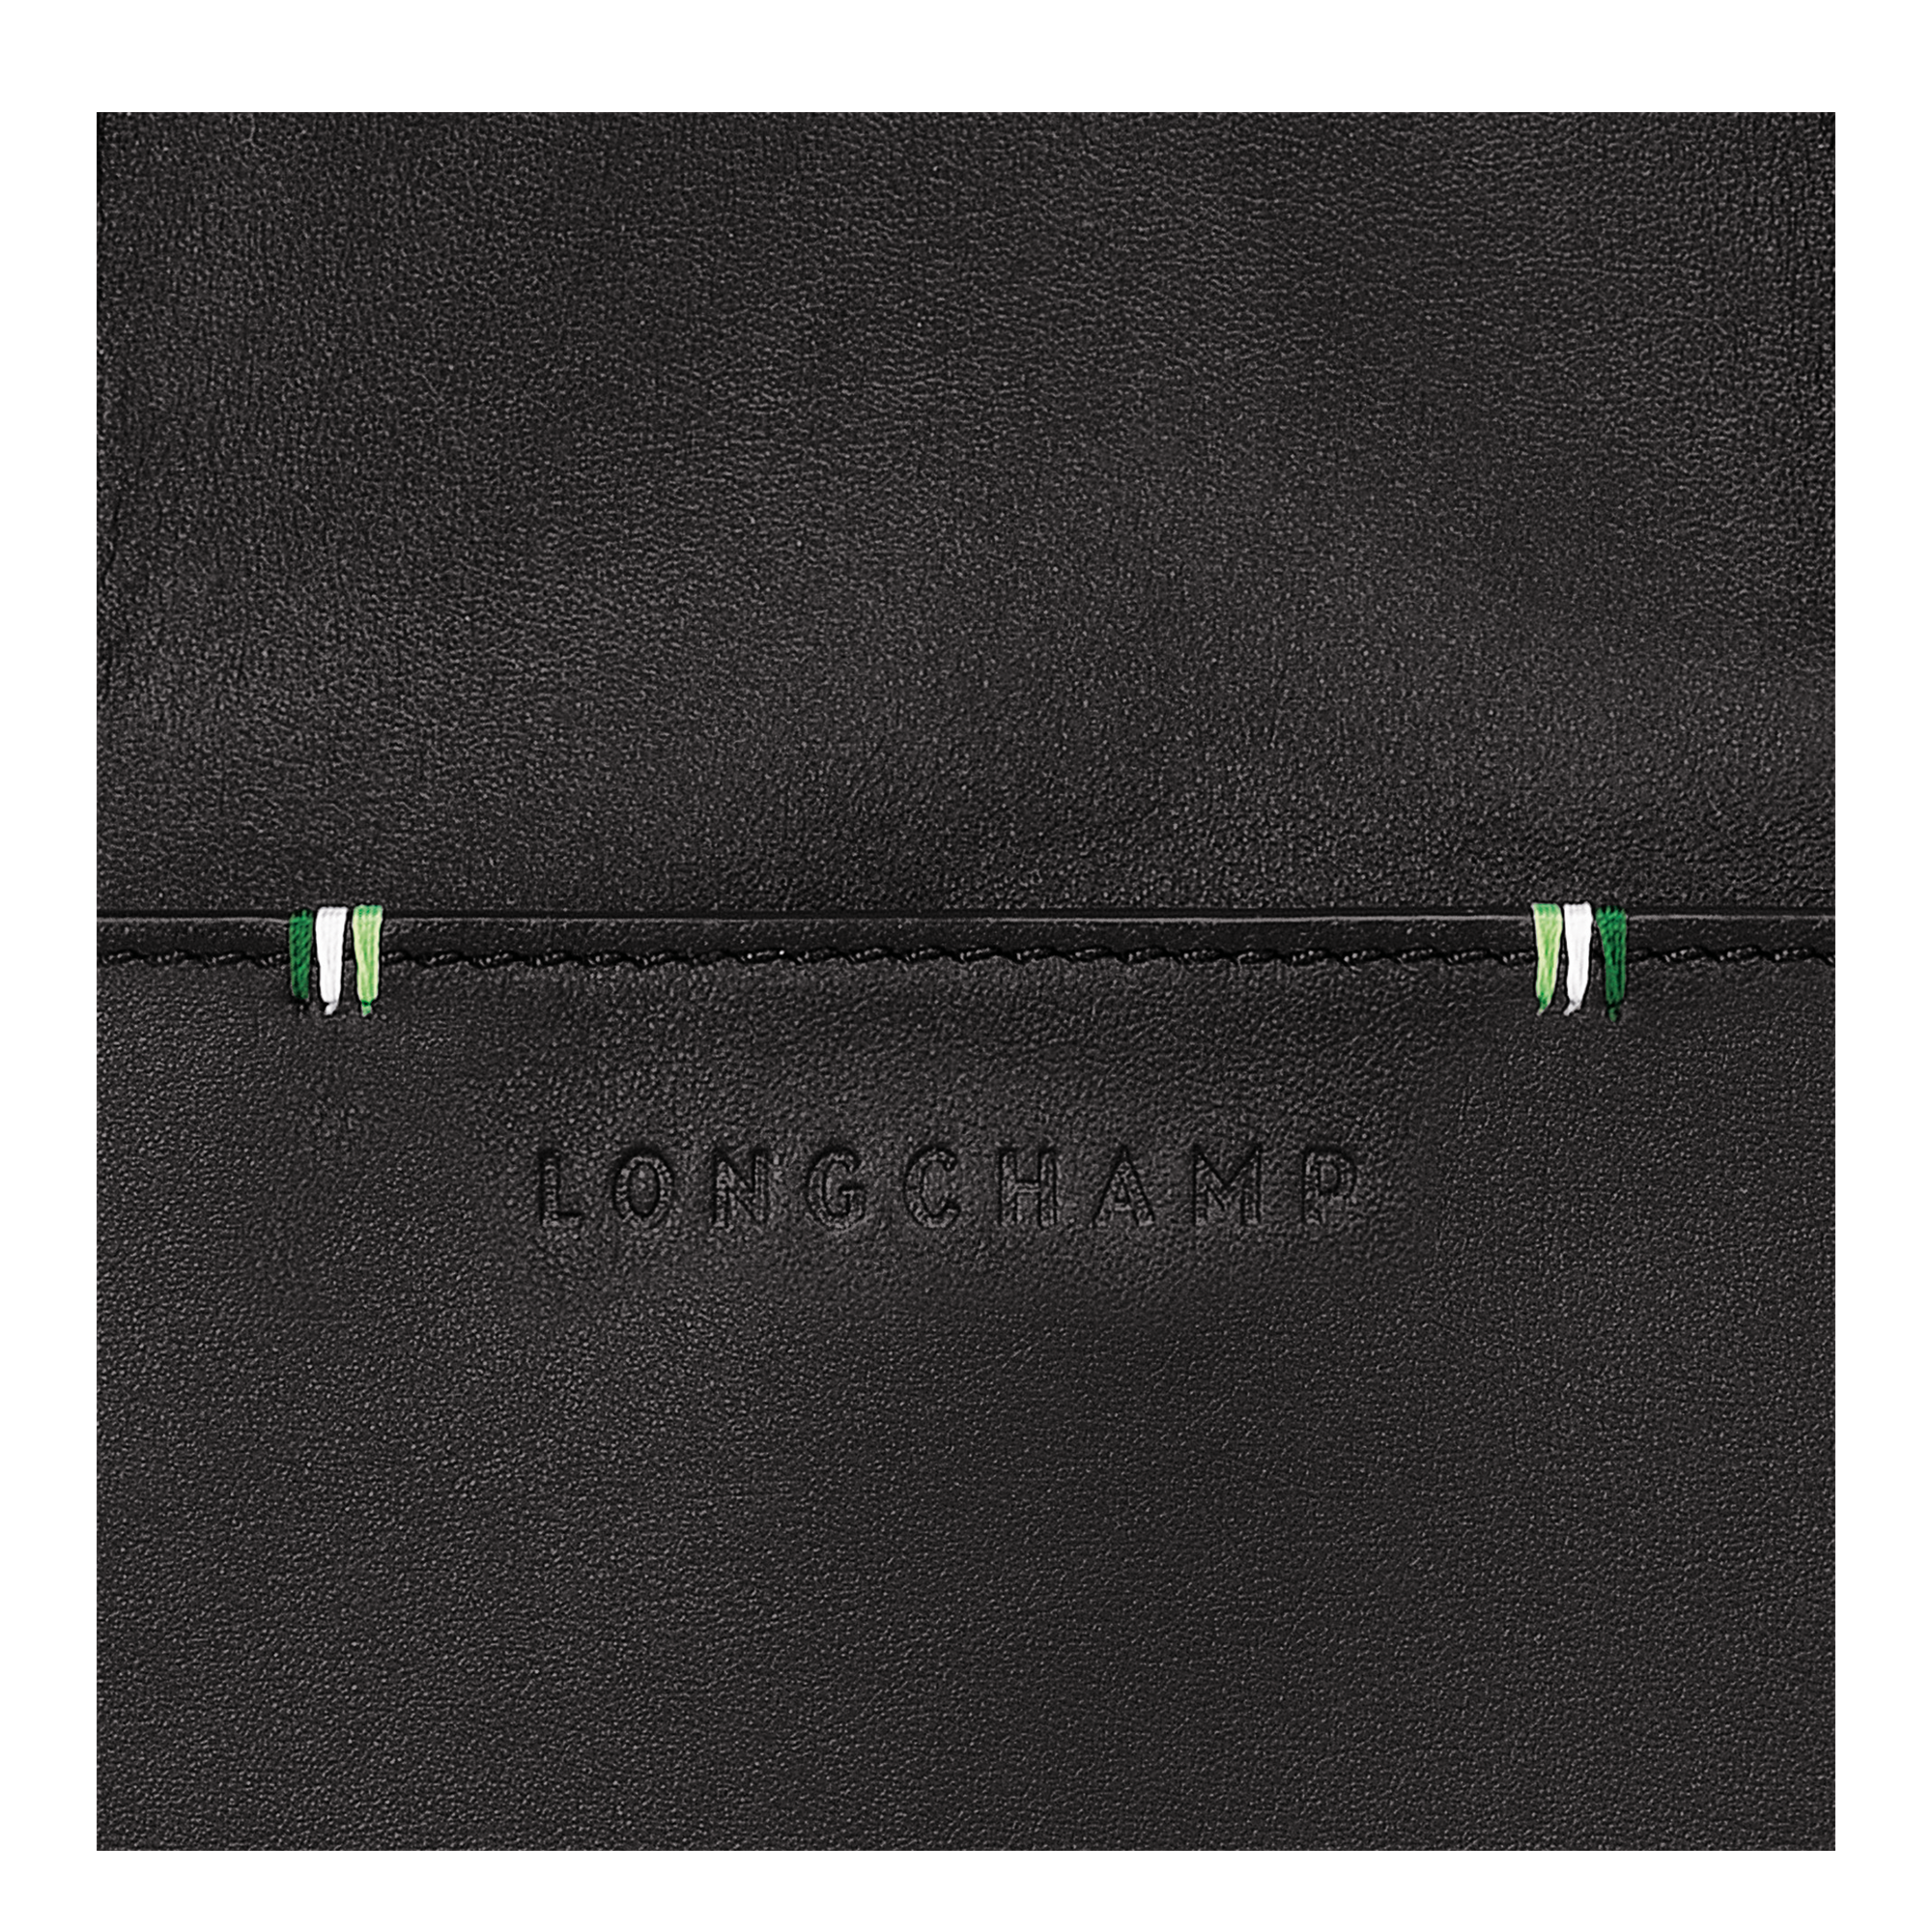 Longchamp sur Seine Maletín S, Negro